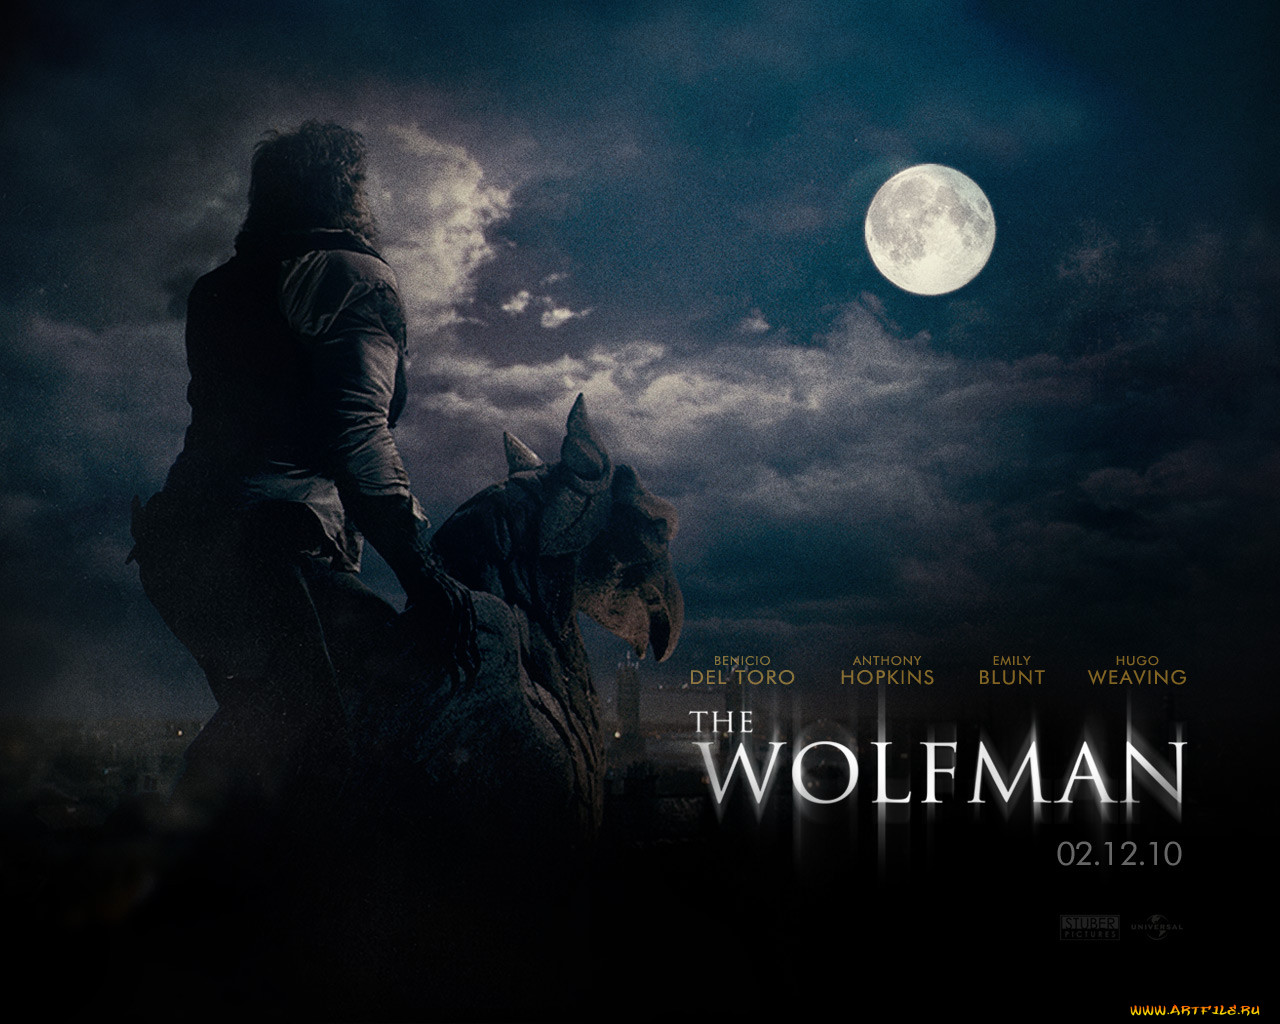 Обои Кино Фильмы The Wolf Man, Обои Для Рабочего Стола, Фотографии.